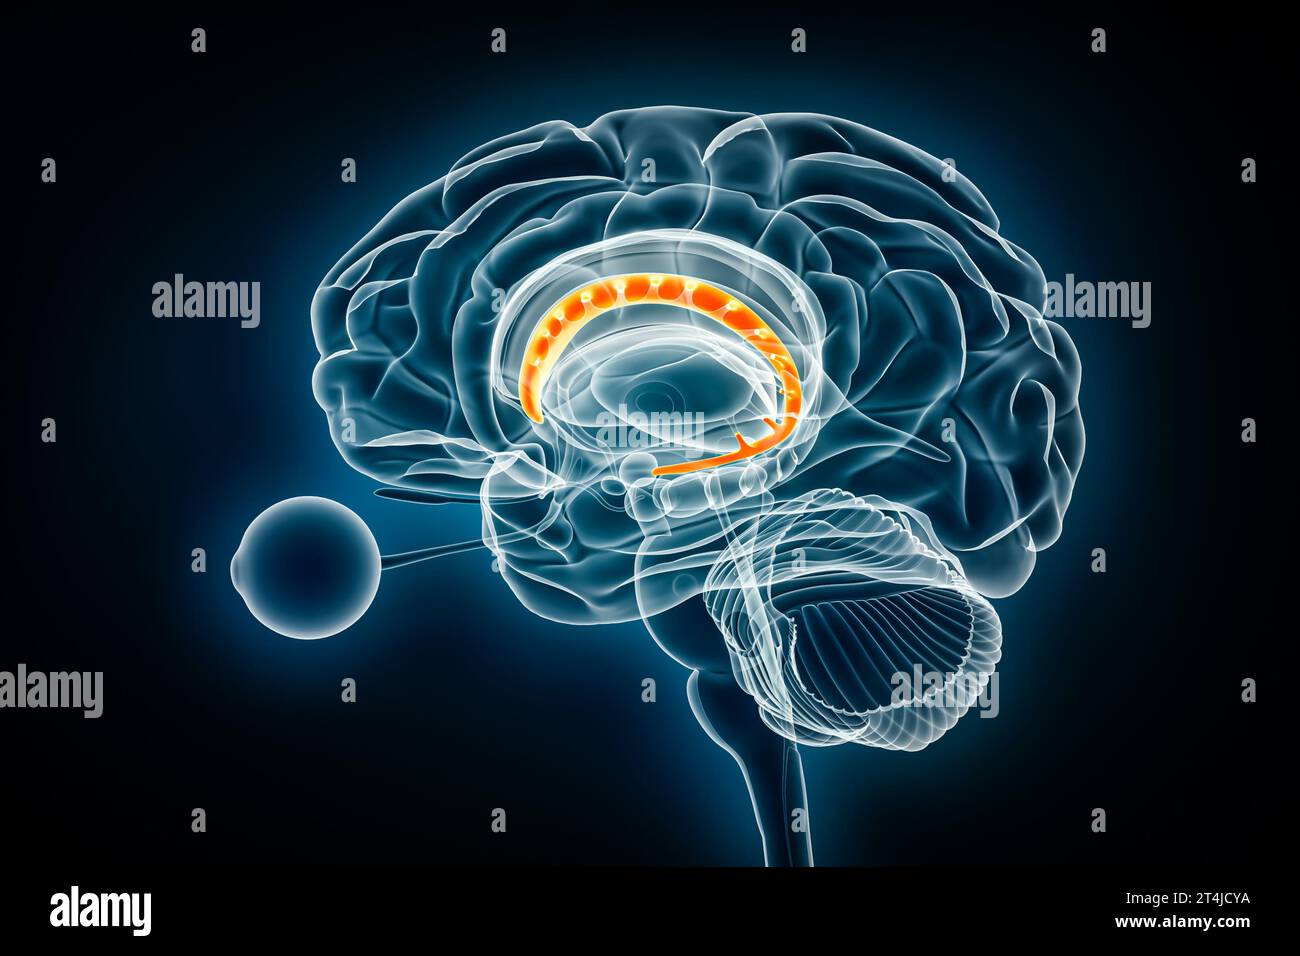 Darstellung der 3D-Darstellung des Nucleusprofils durch die Röntgenansicht des Kaudatuskerns. Anatomie des menschlichen Gehirns und der Basalganglien, Medizin, Gesundheitswesen, Biologie, Wissenschaft, Neuroscien Stockfoto